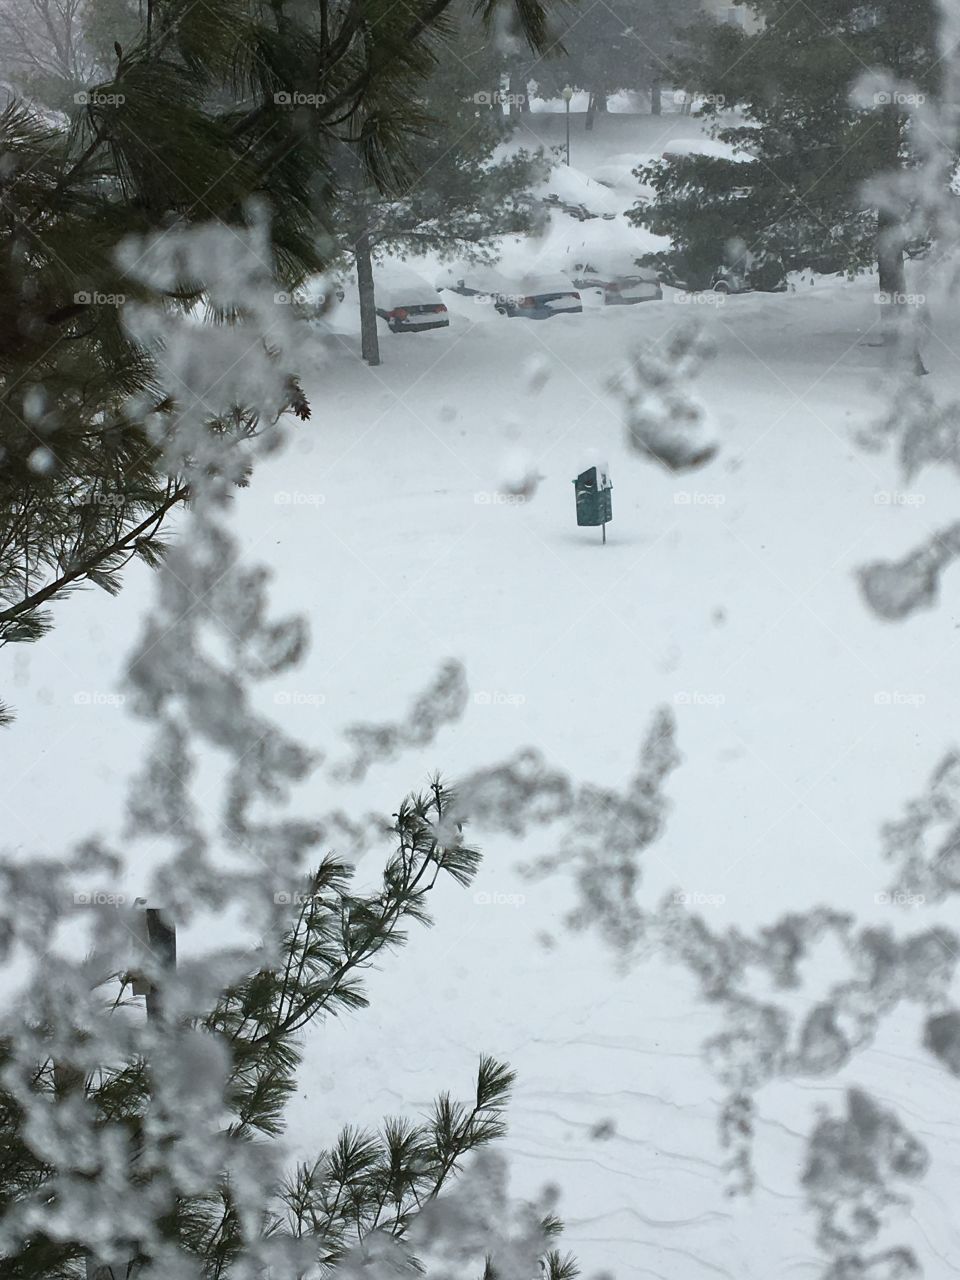 Blizzard 2016 - Northern Virginia